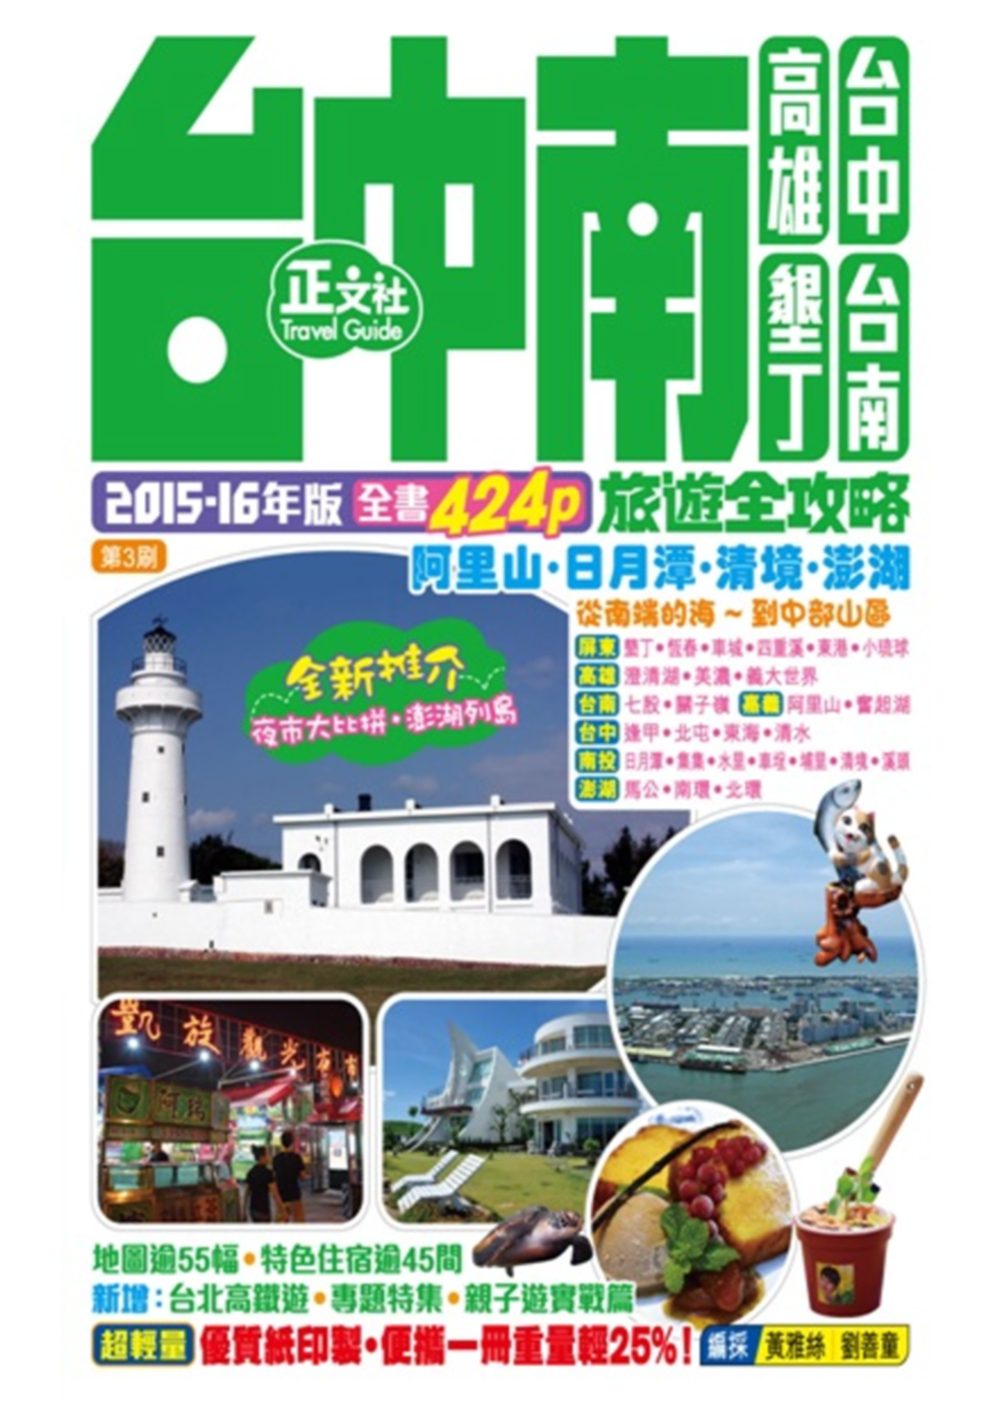 台中南旅遊全攻略2015-16年版（第3刷）